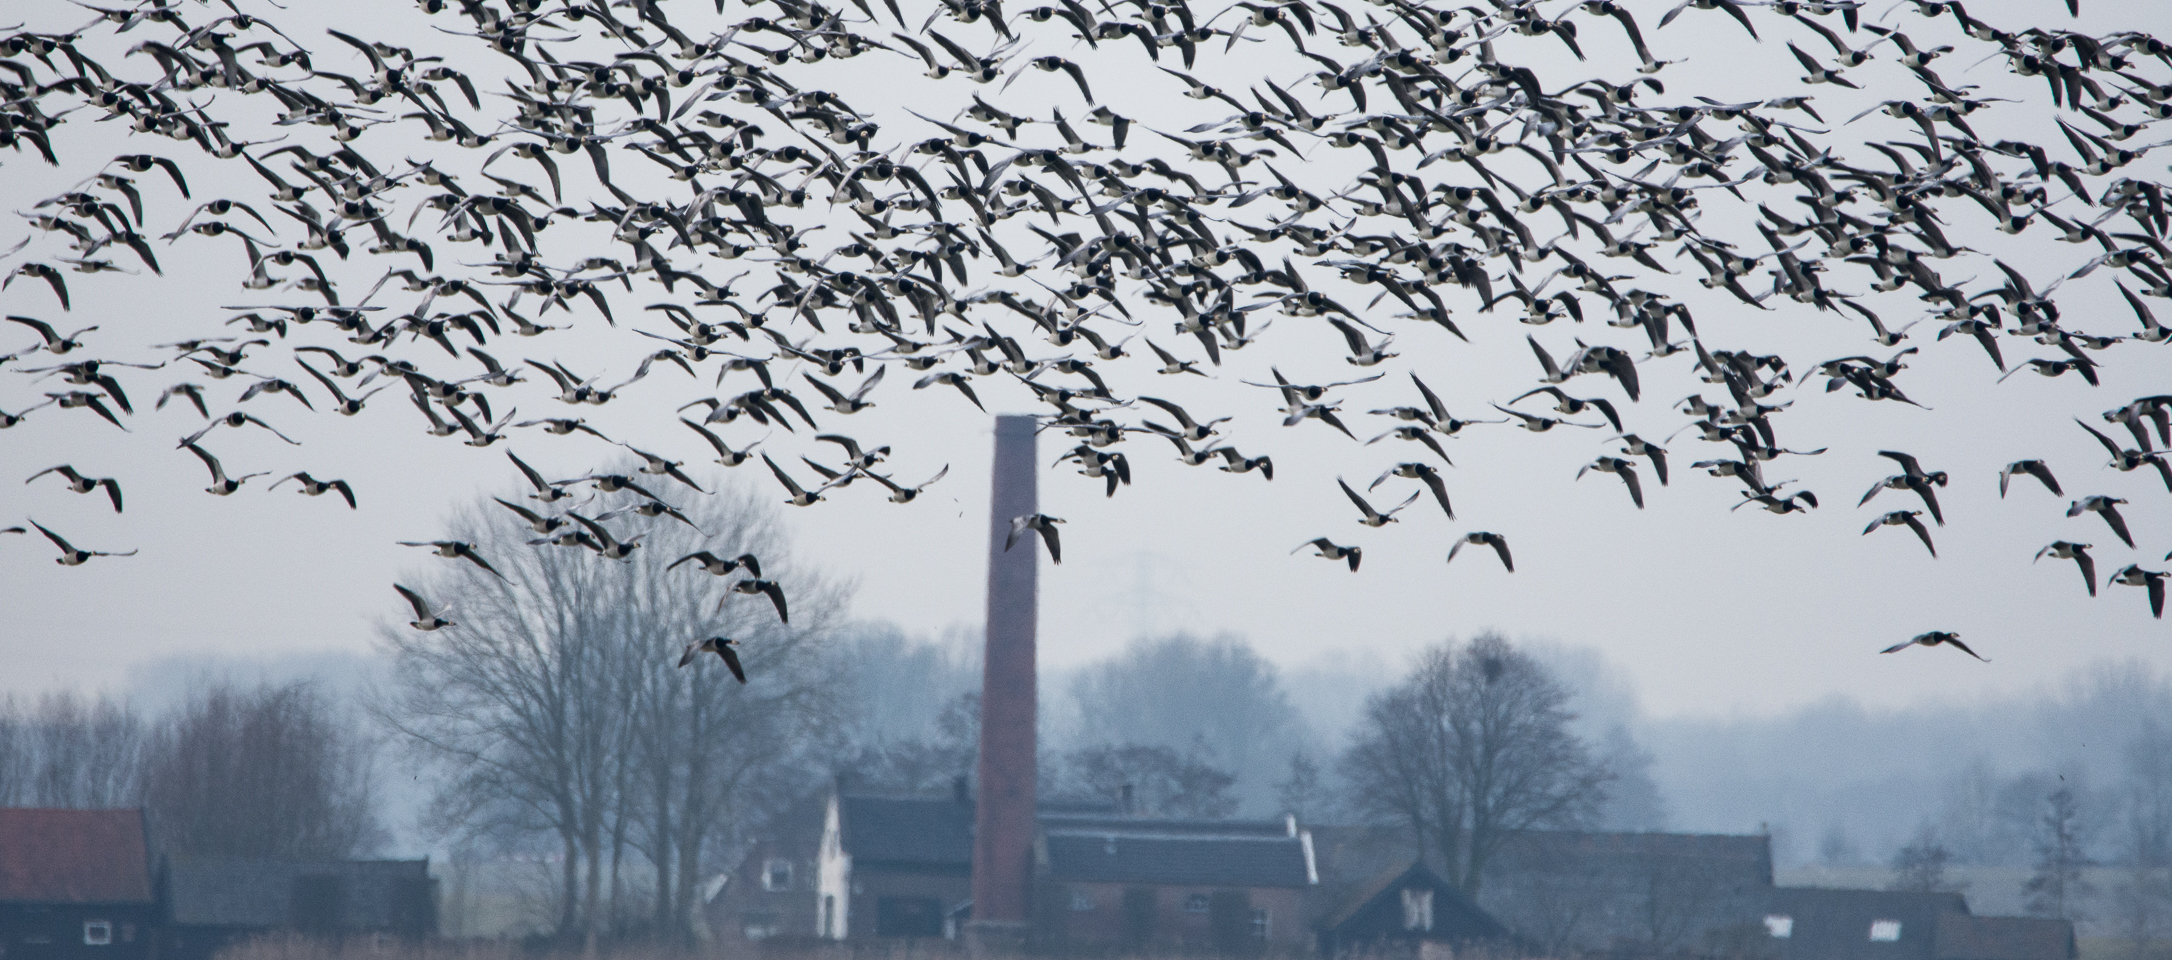 Vernatting brengt meer vogels in polder Arkemheen